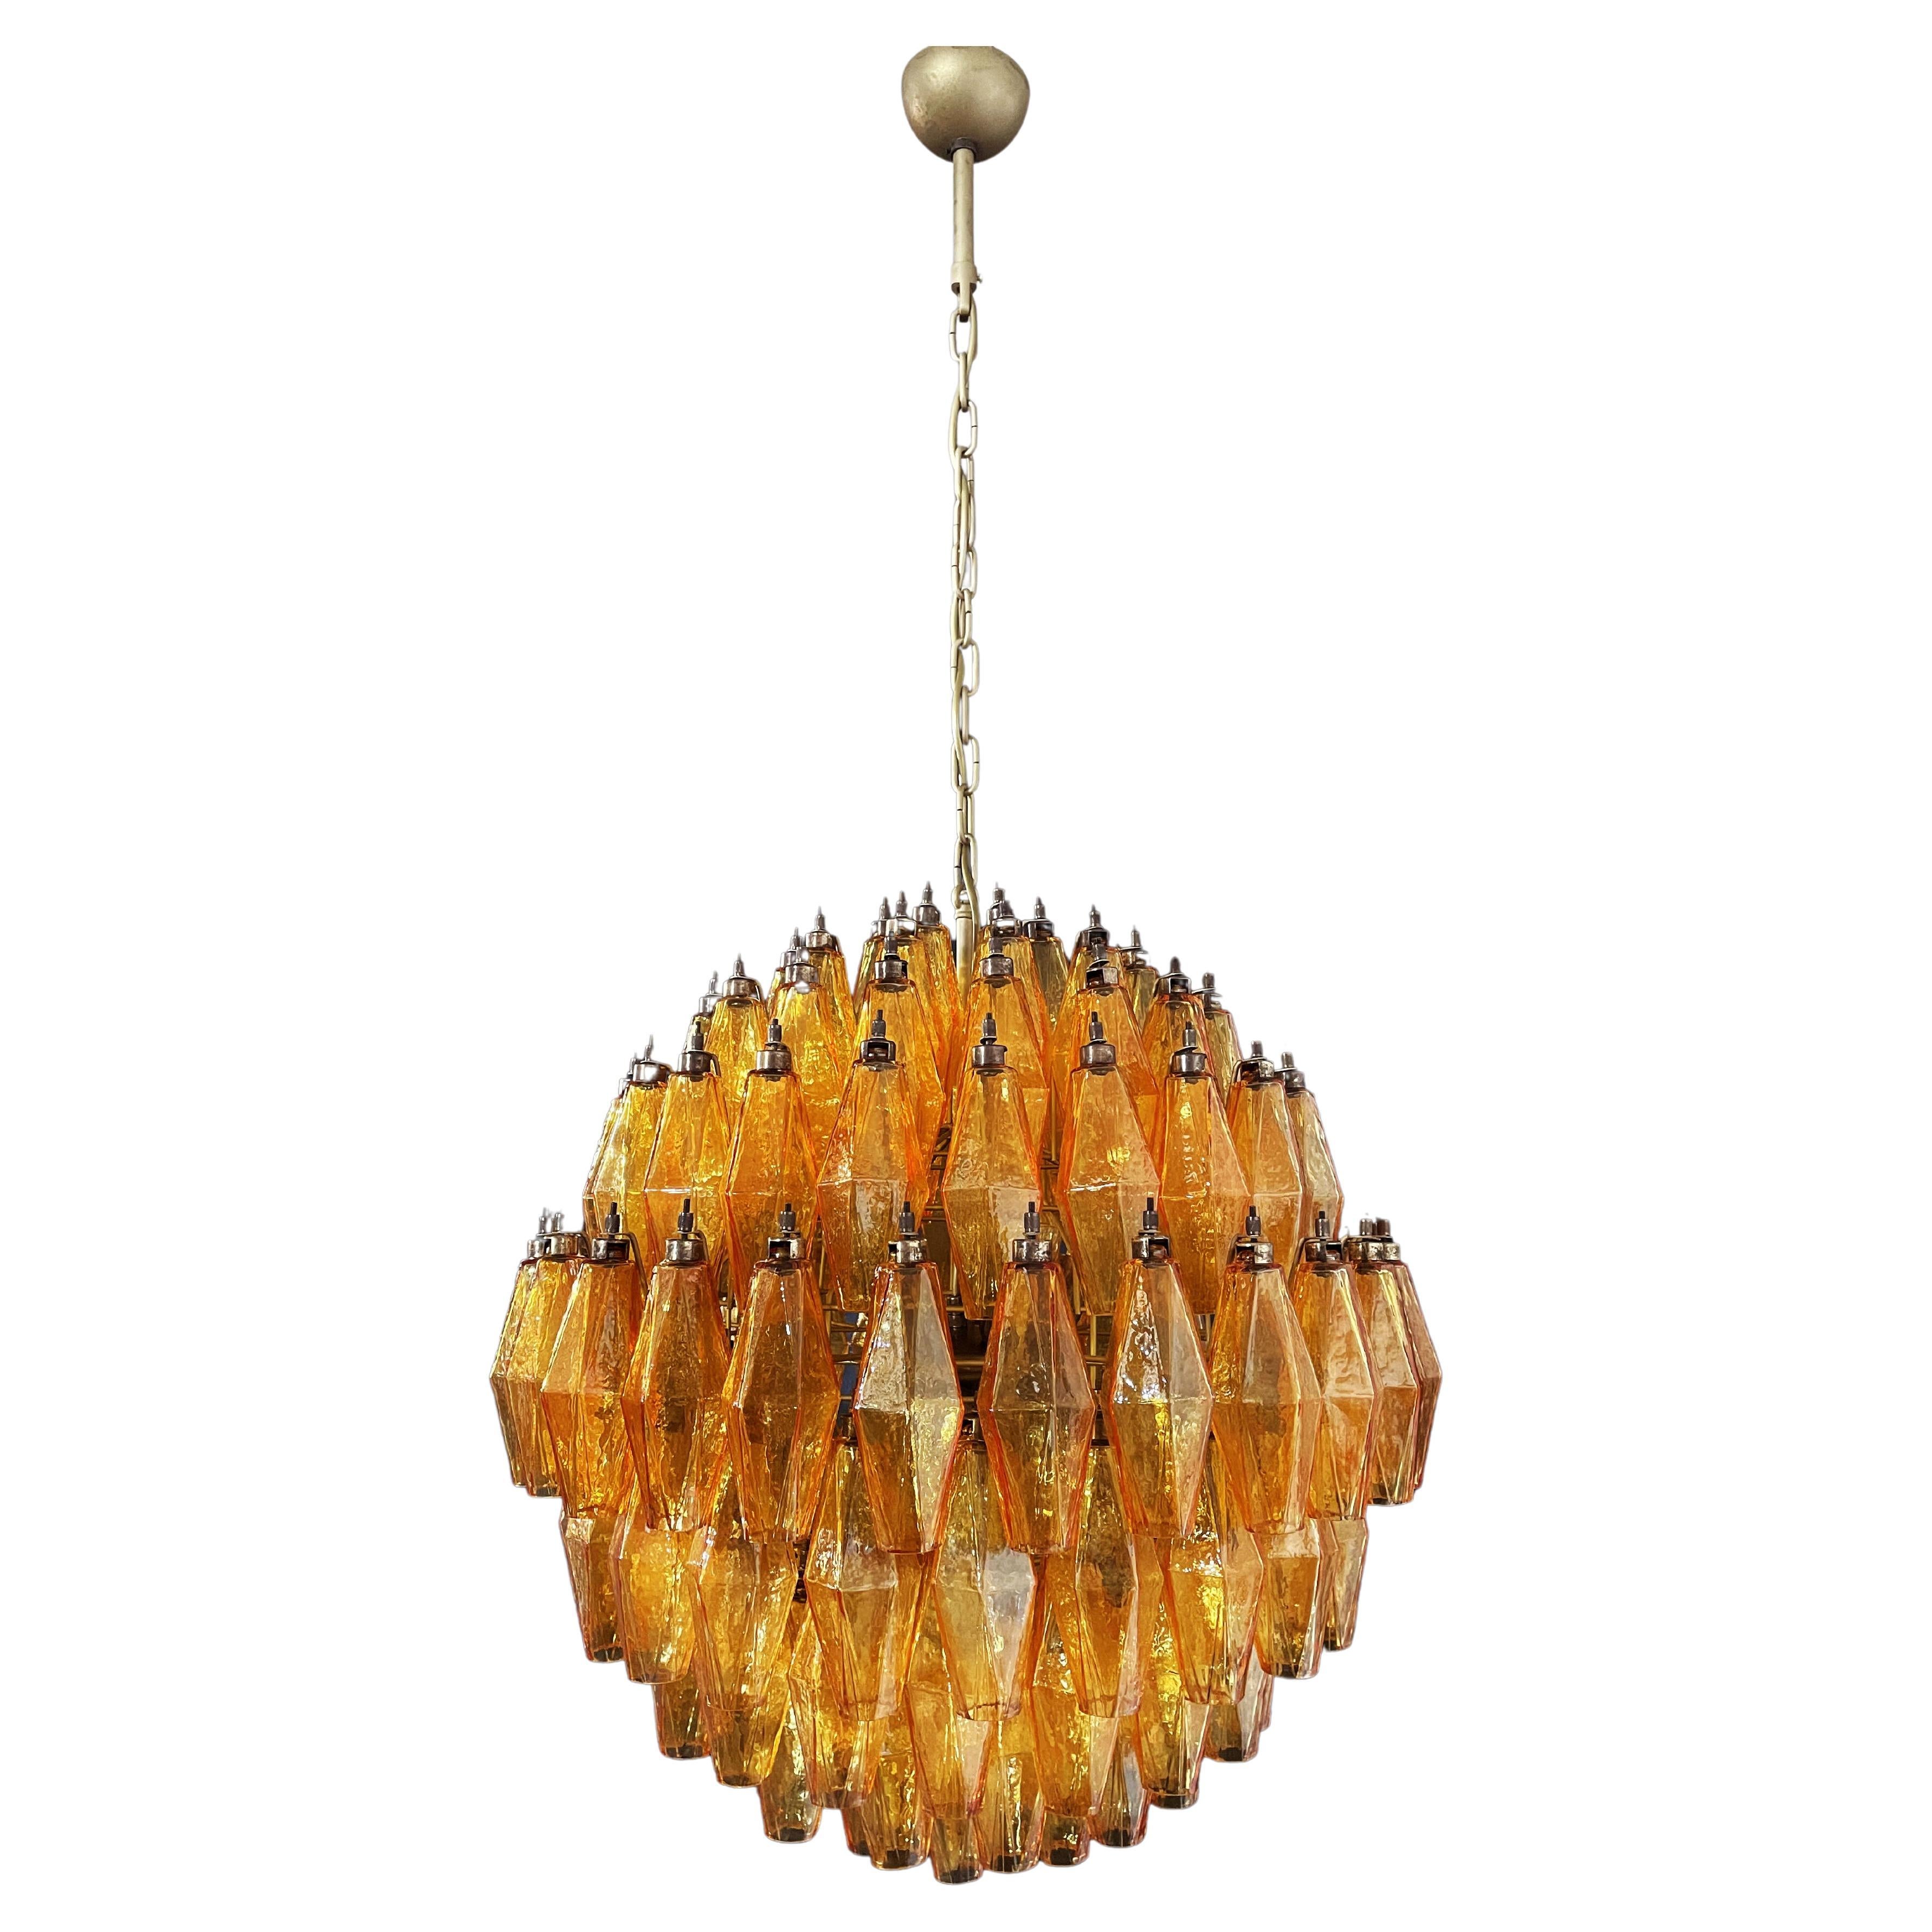 Magnifique candelier sphérique Poliedri de Murano - 140 Amber Poliedri